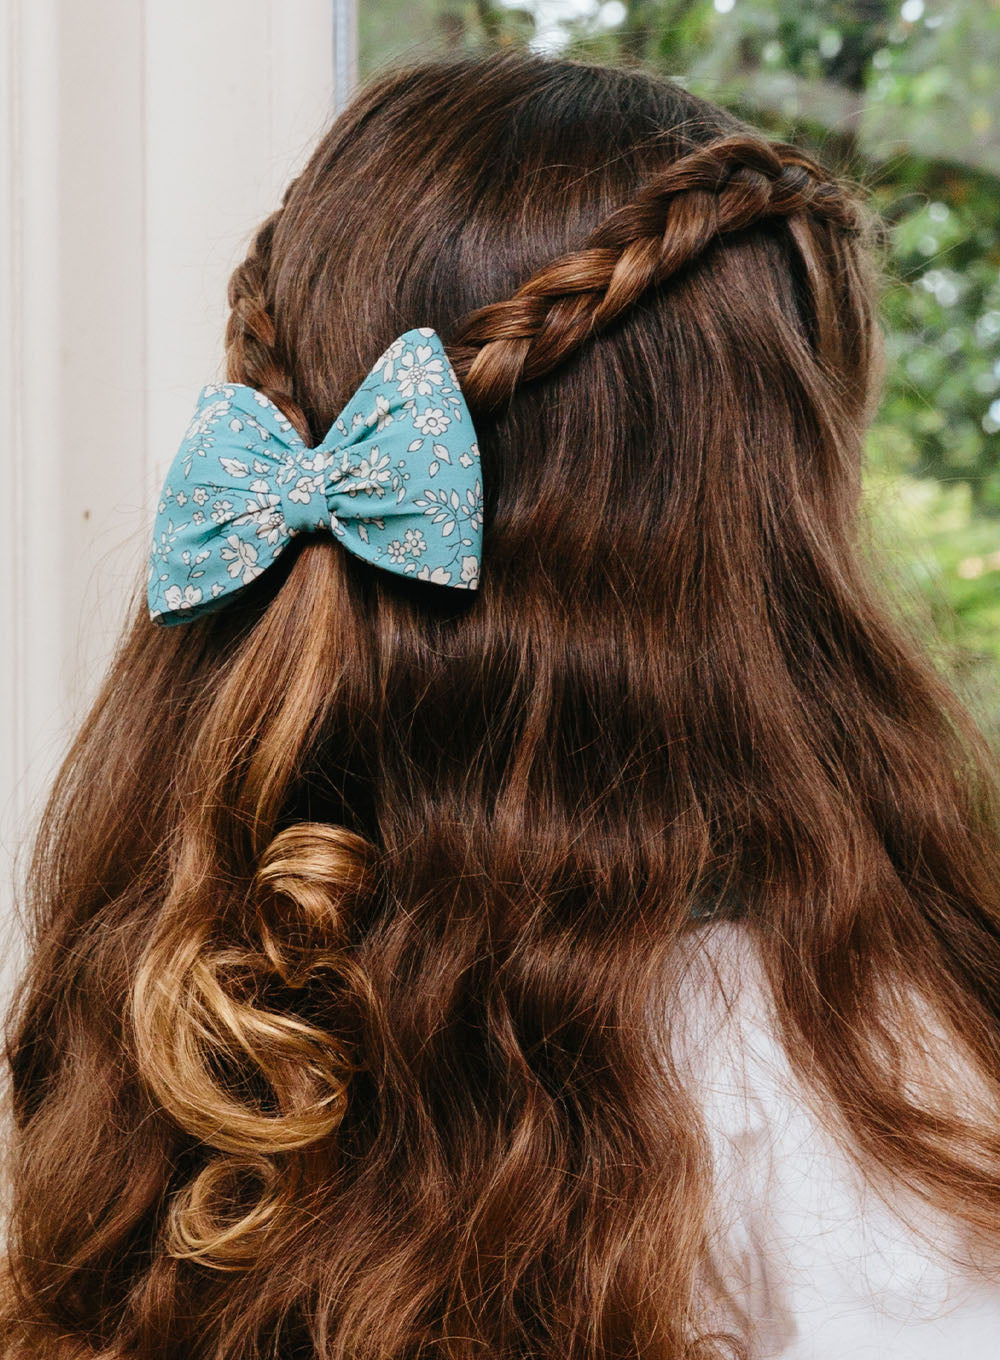 Aqua Blue Clip-on Hair Bow, Hair Accessories